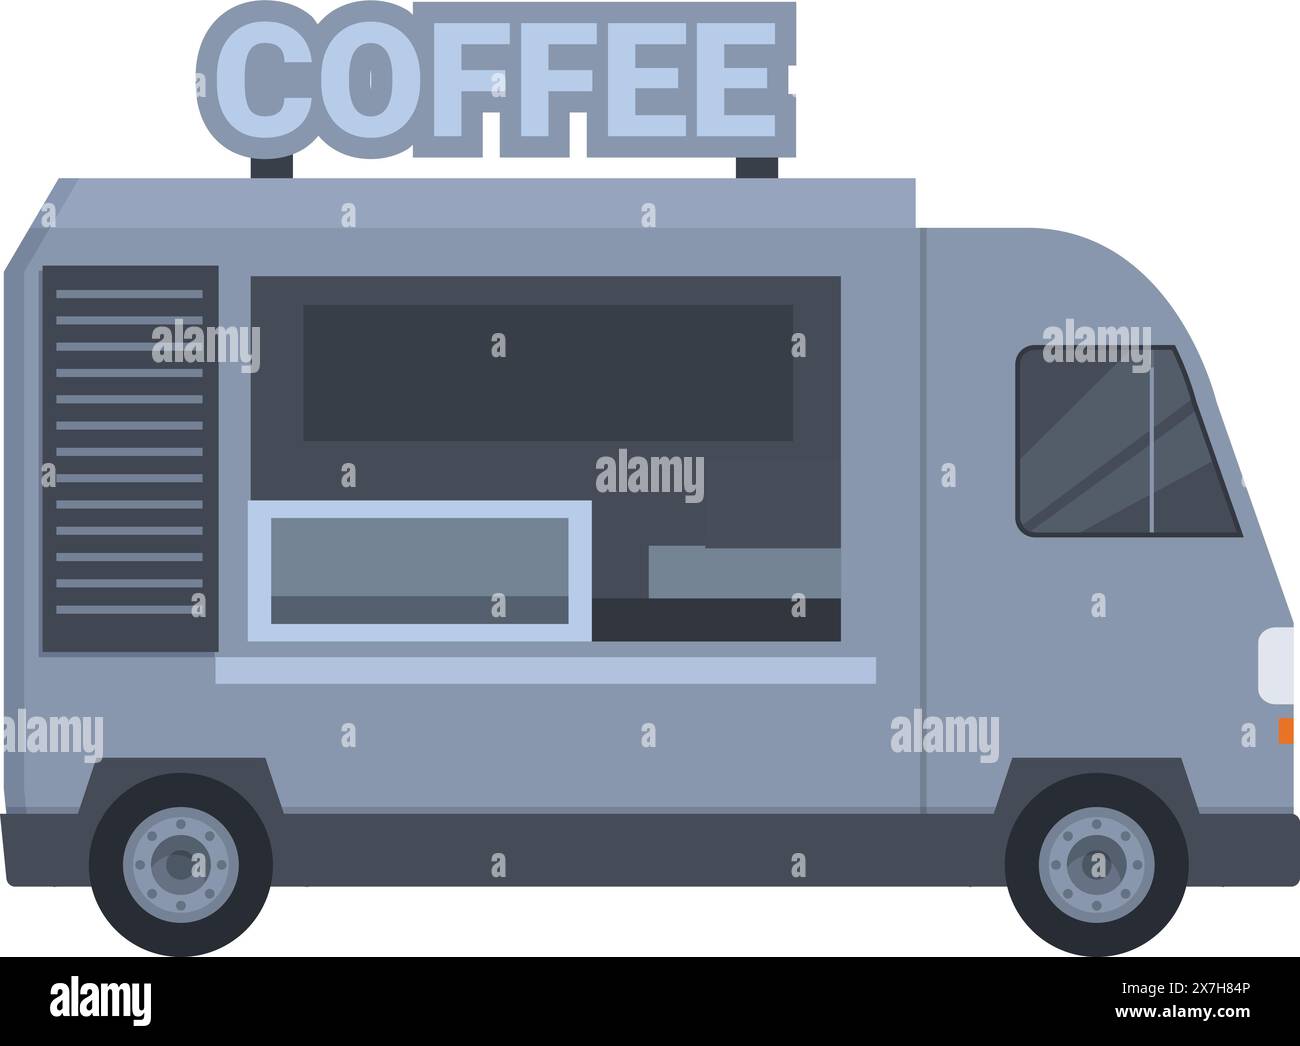 Design vettoriale illustrato di un moderno camion del caffè mobile che distribuisce caffè espresso e altre bevande, perfetto per eventi di strada e servizi di catering all'aperto Illustrazione Vettoriale